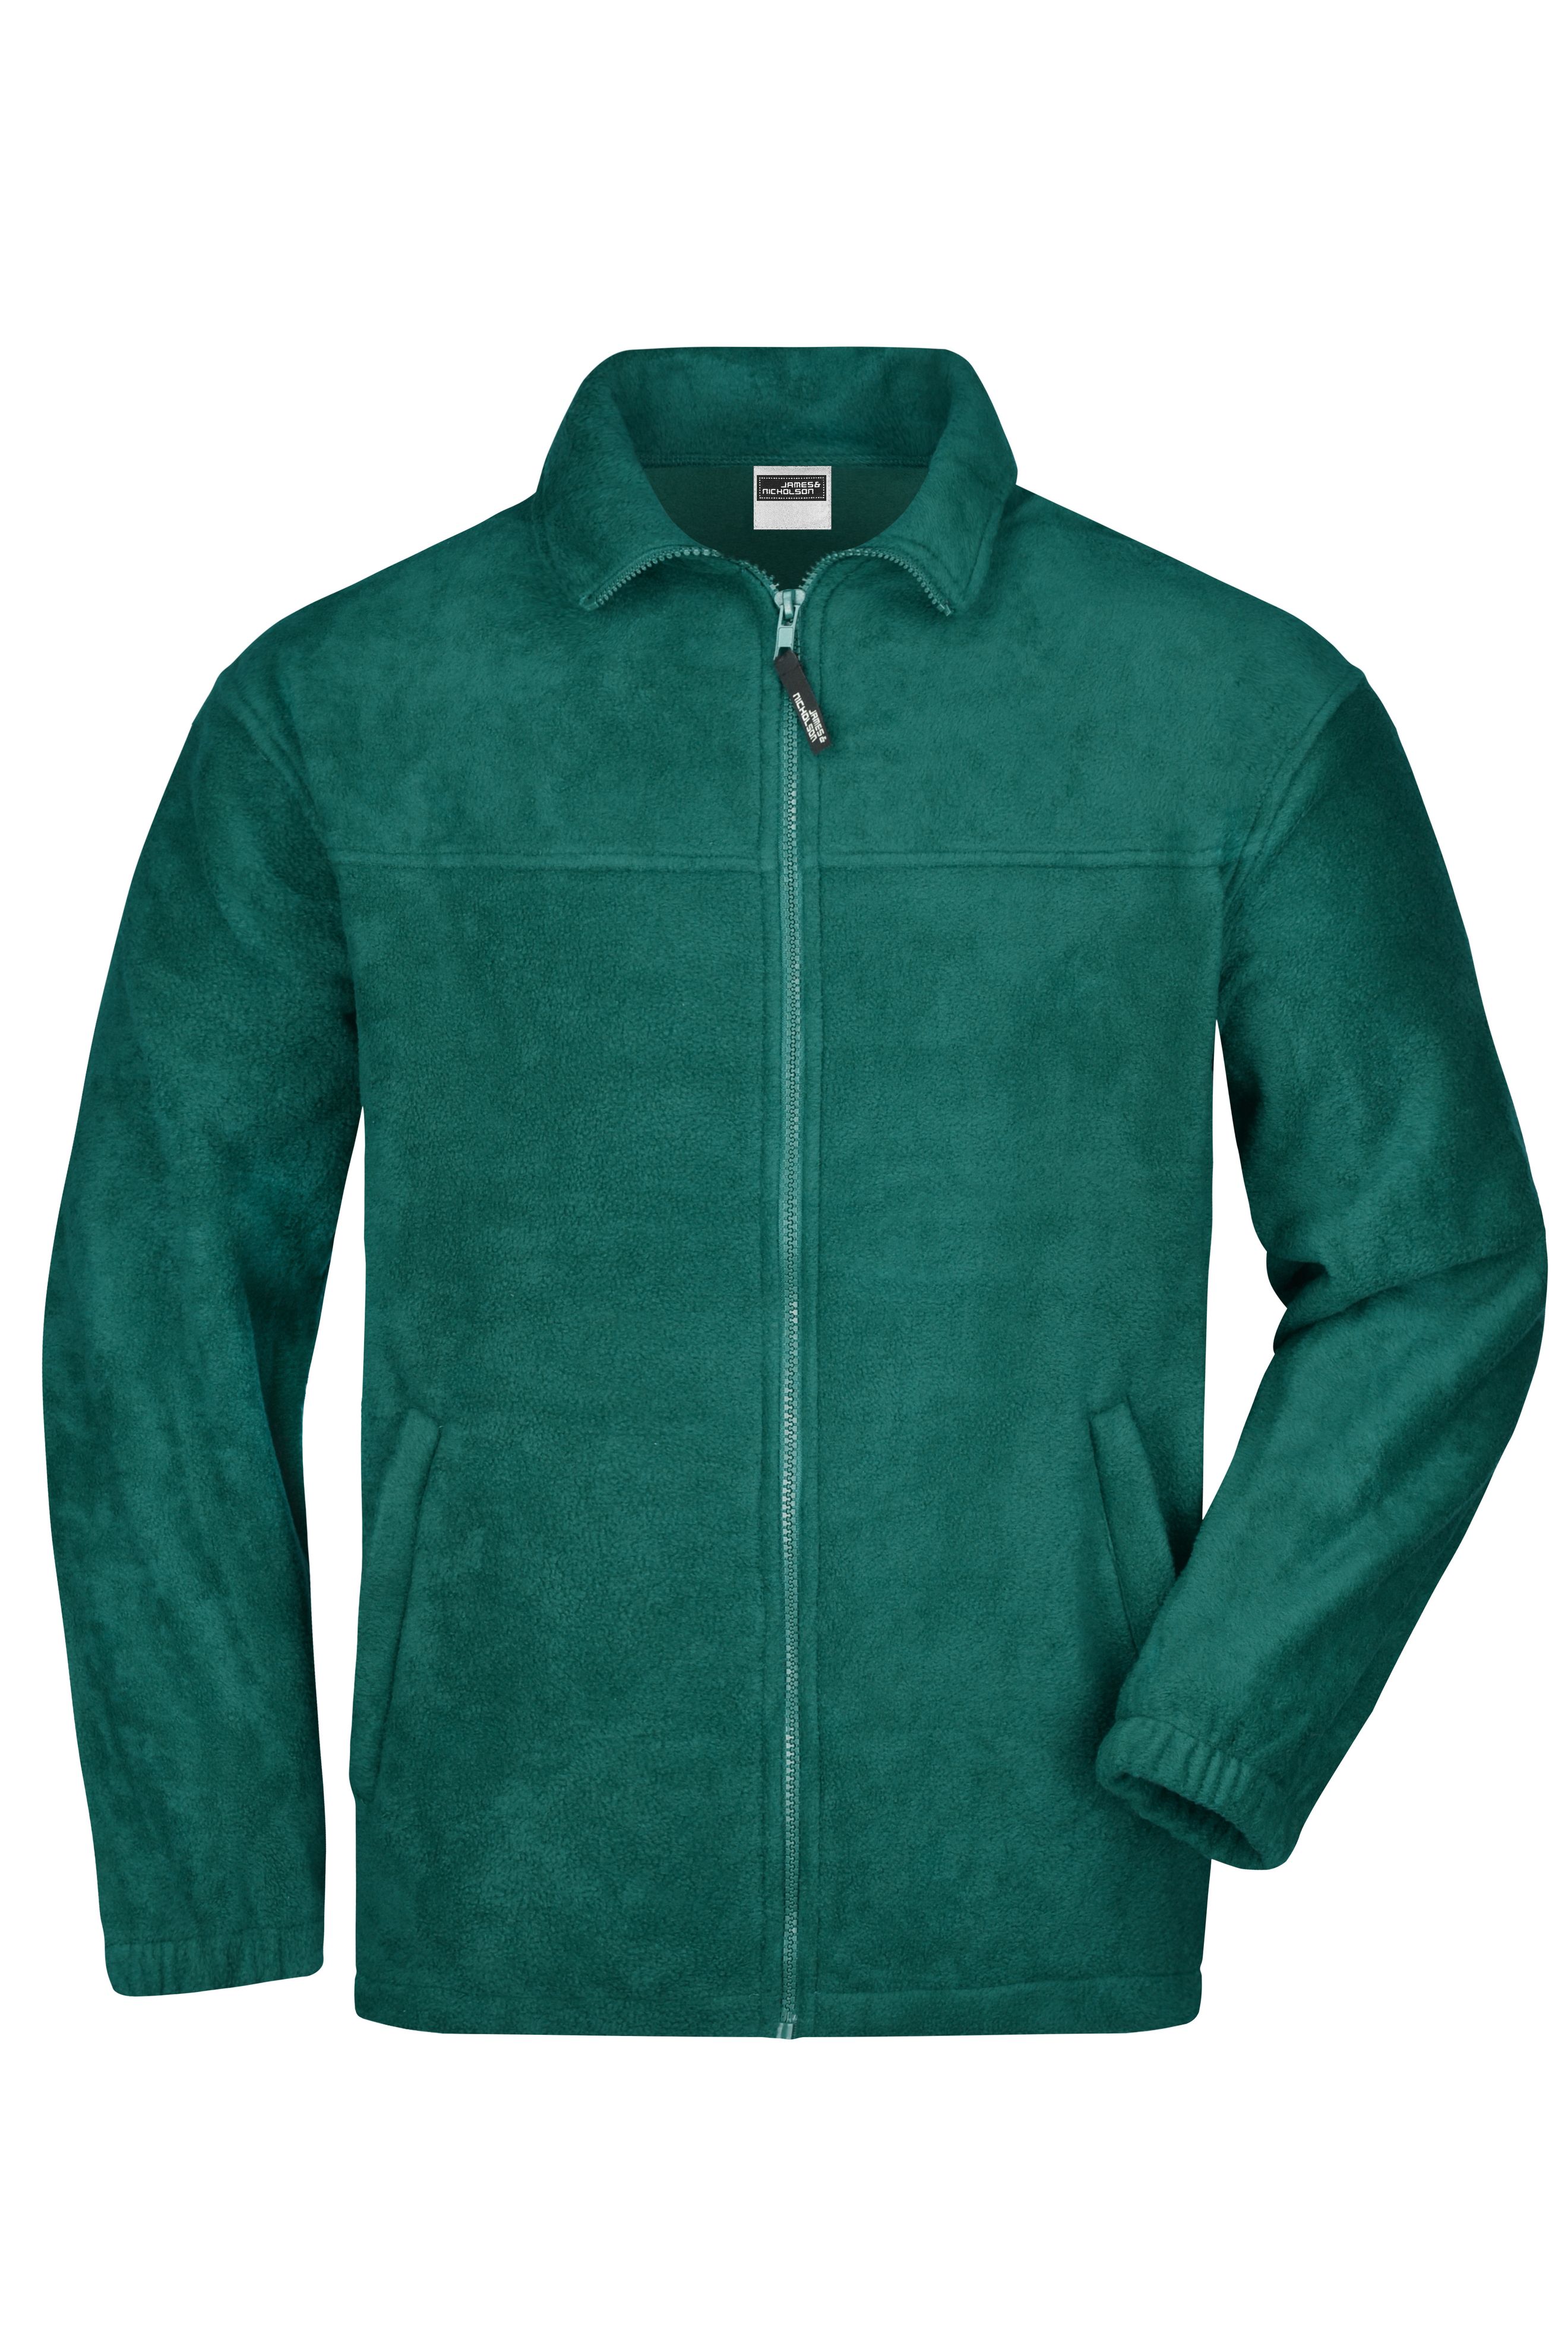 Full-Zip Fleece JN044 Jacke in schwerer Fleece-Qualität